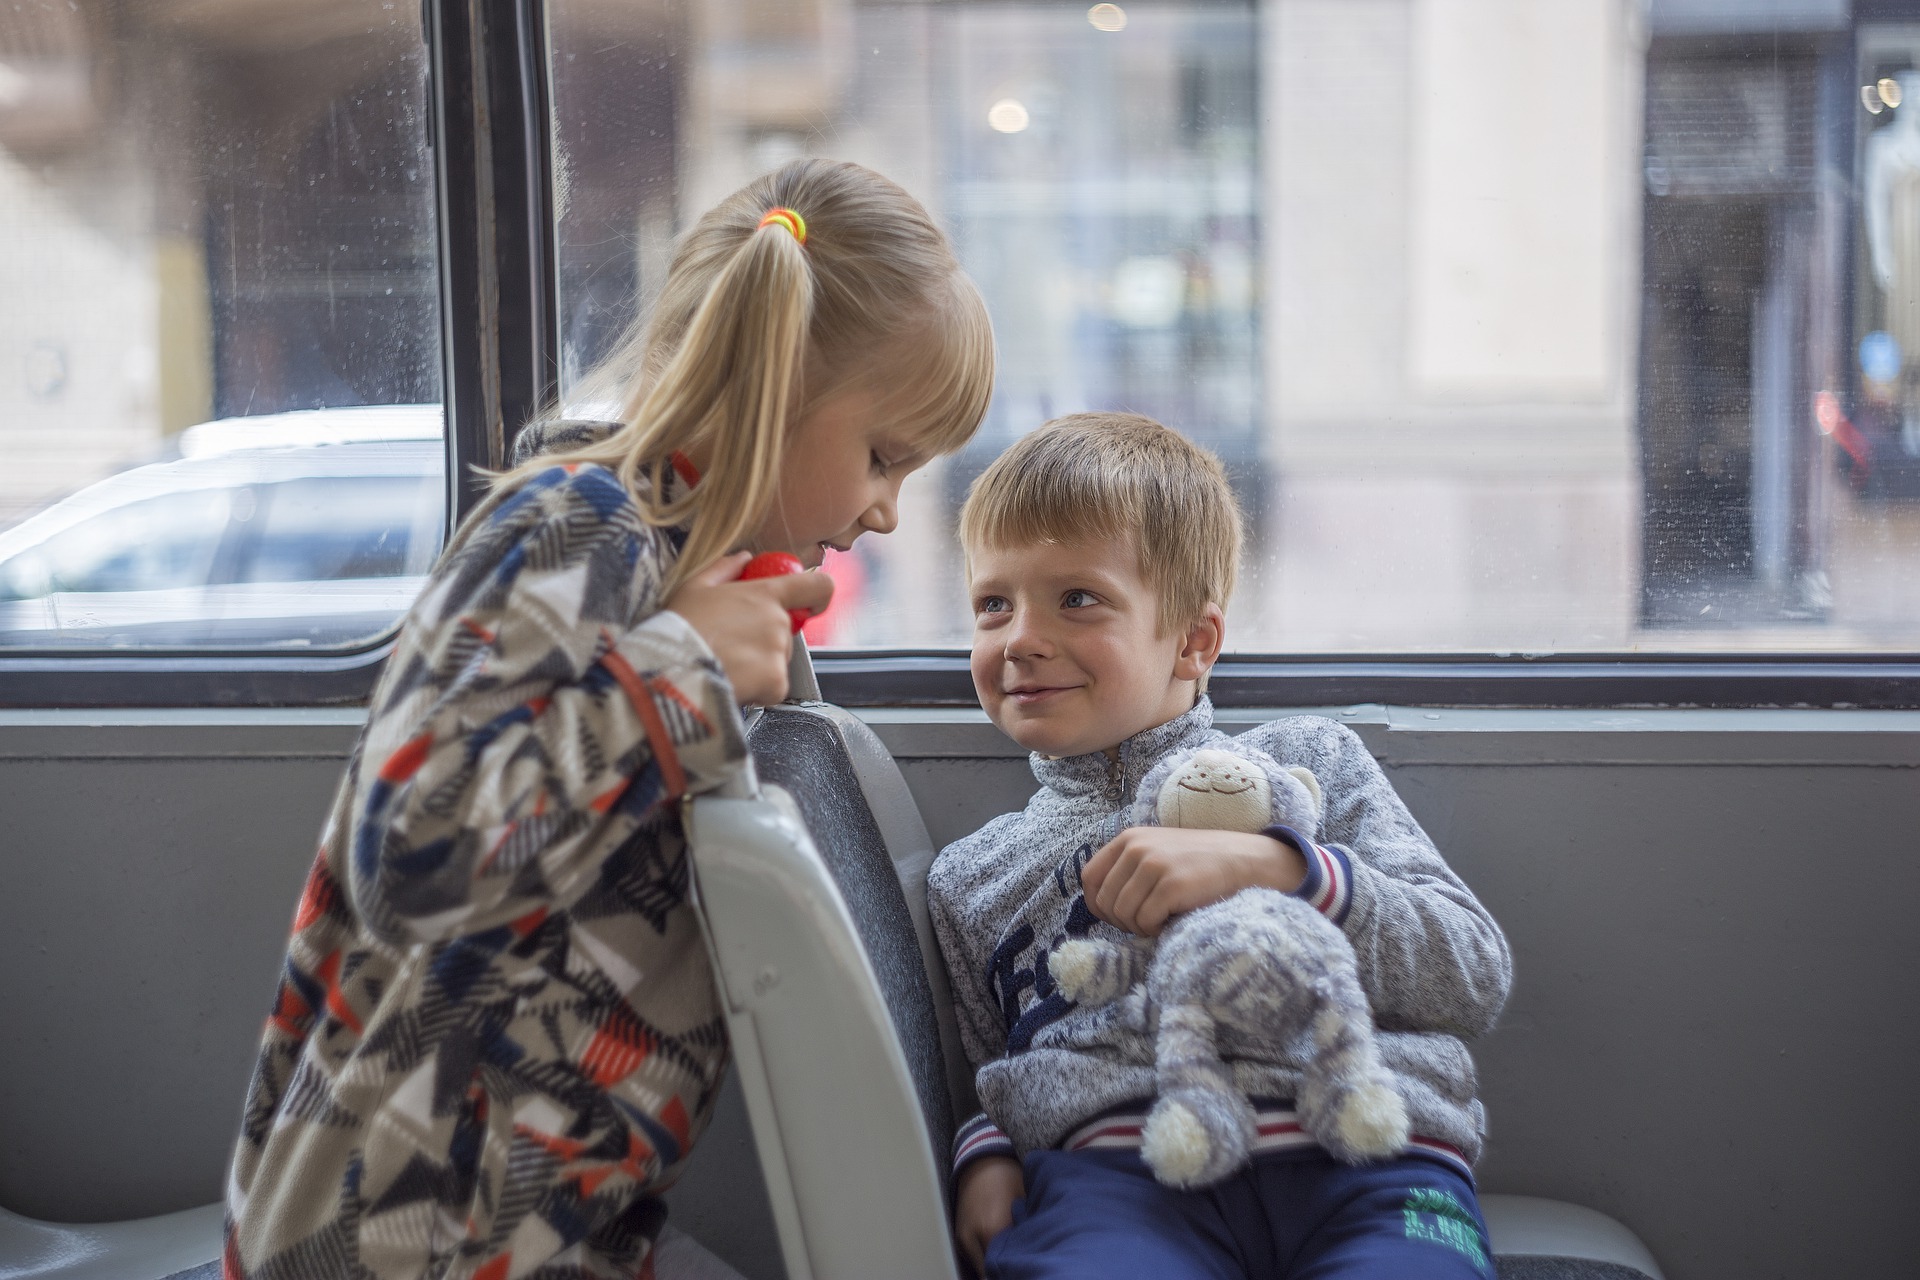 Бесплатный проезд в автобусе для детей